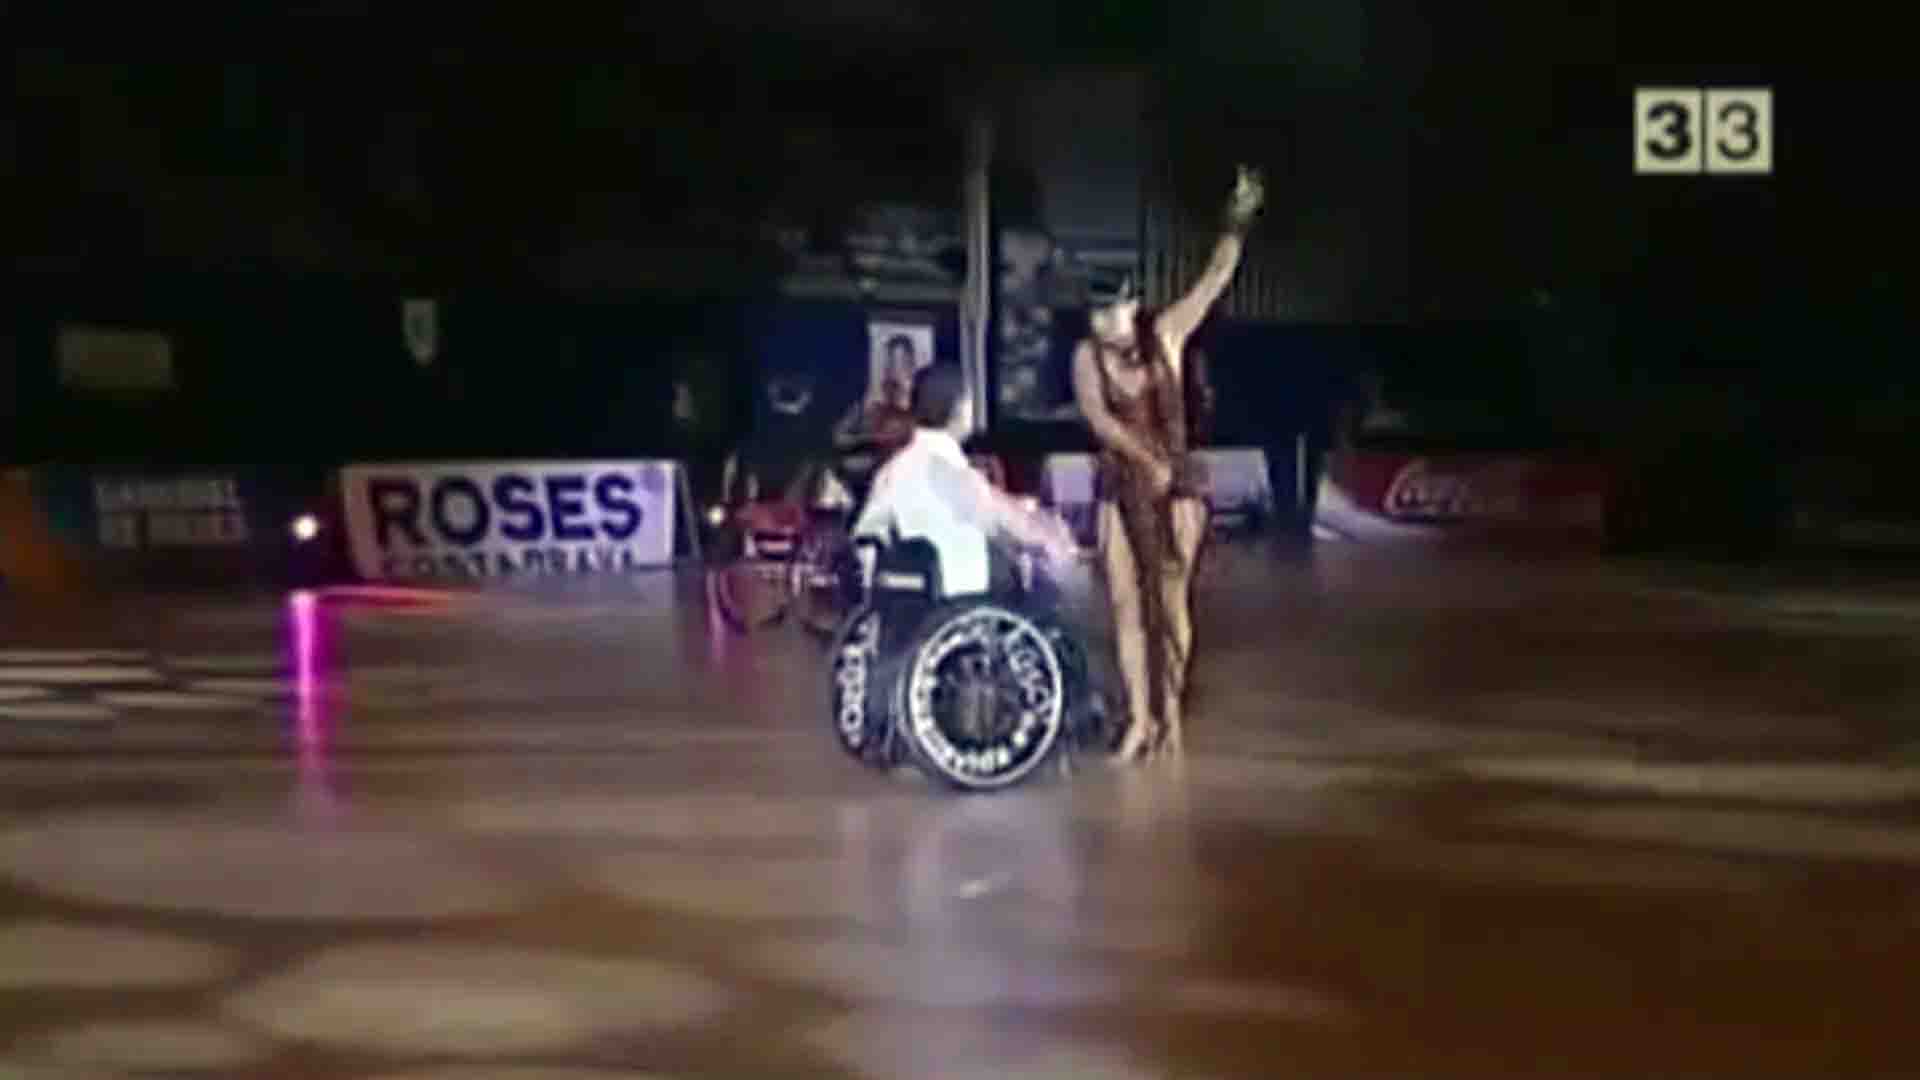 Ballet en silla de ruedas, una propuesta inclusiva